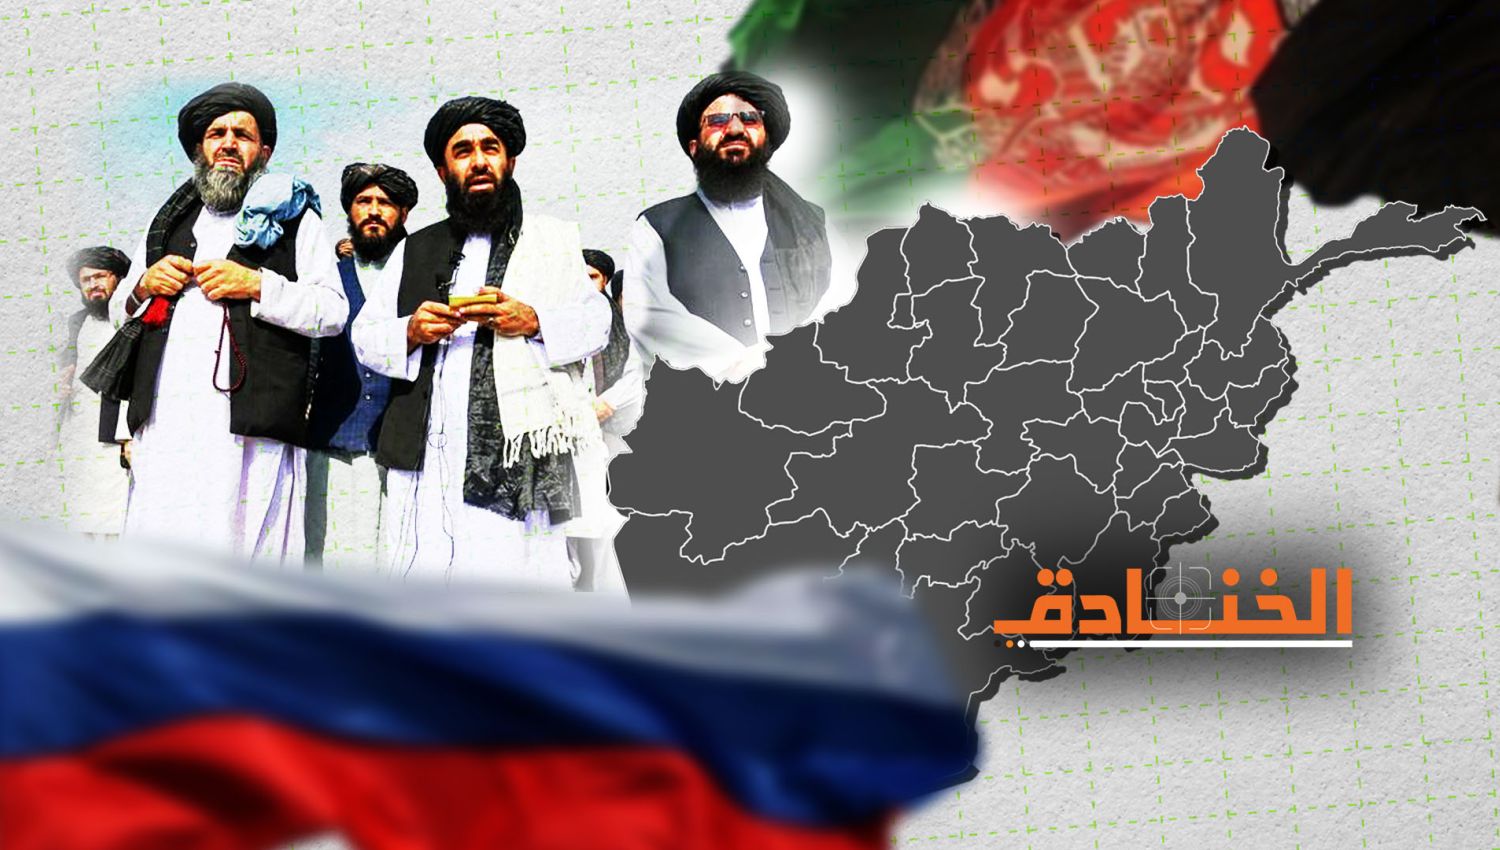 روسيا وتقلص النفوذ الامريكي في افغانستان